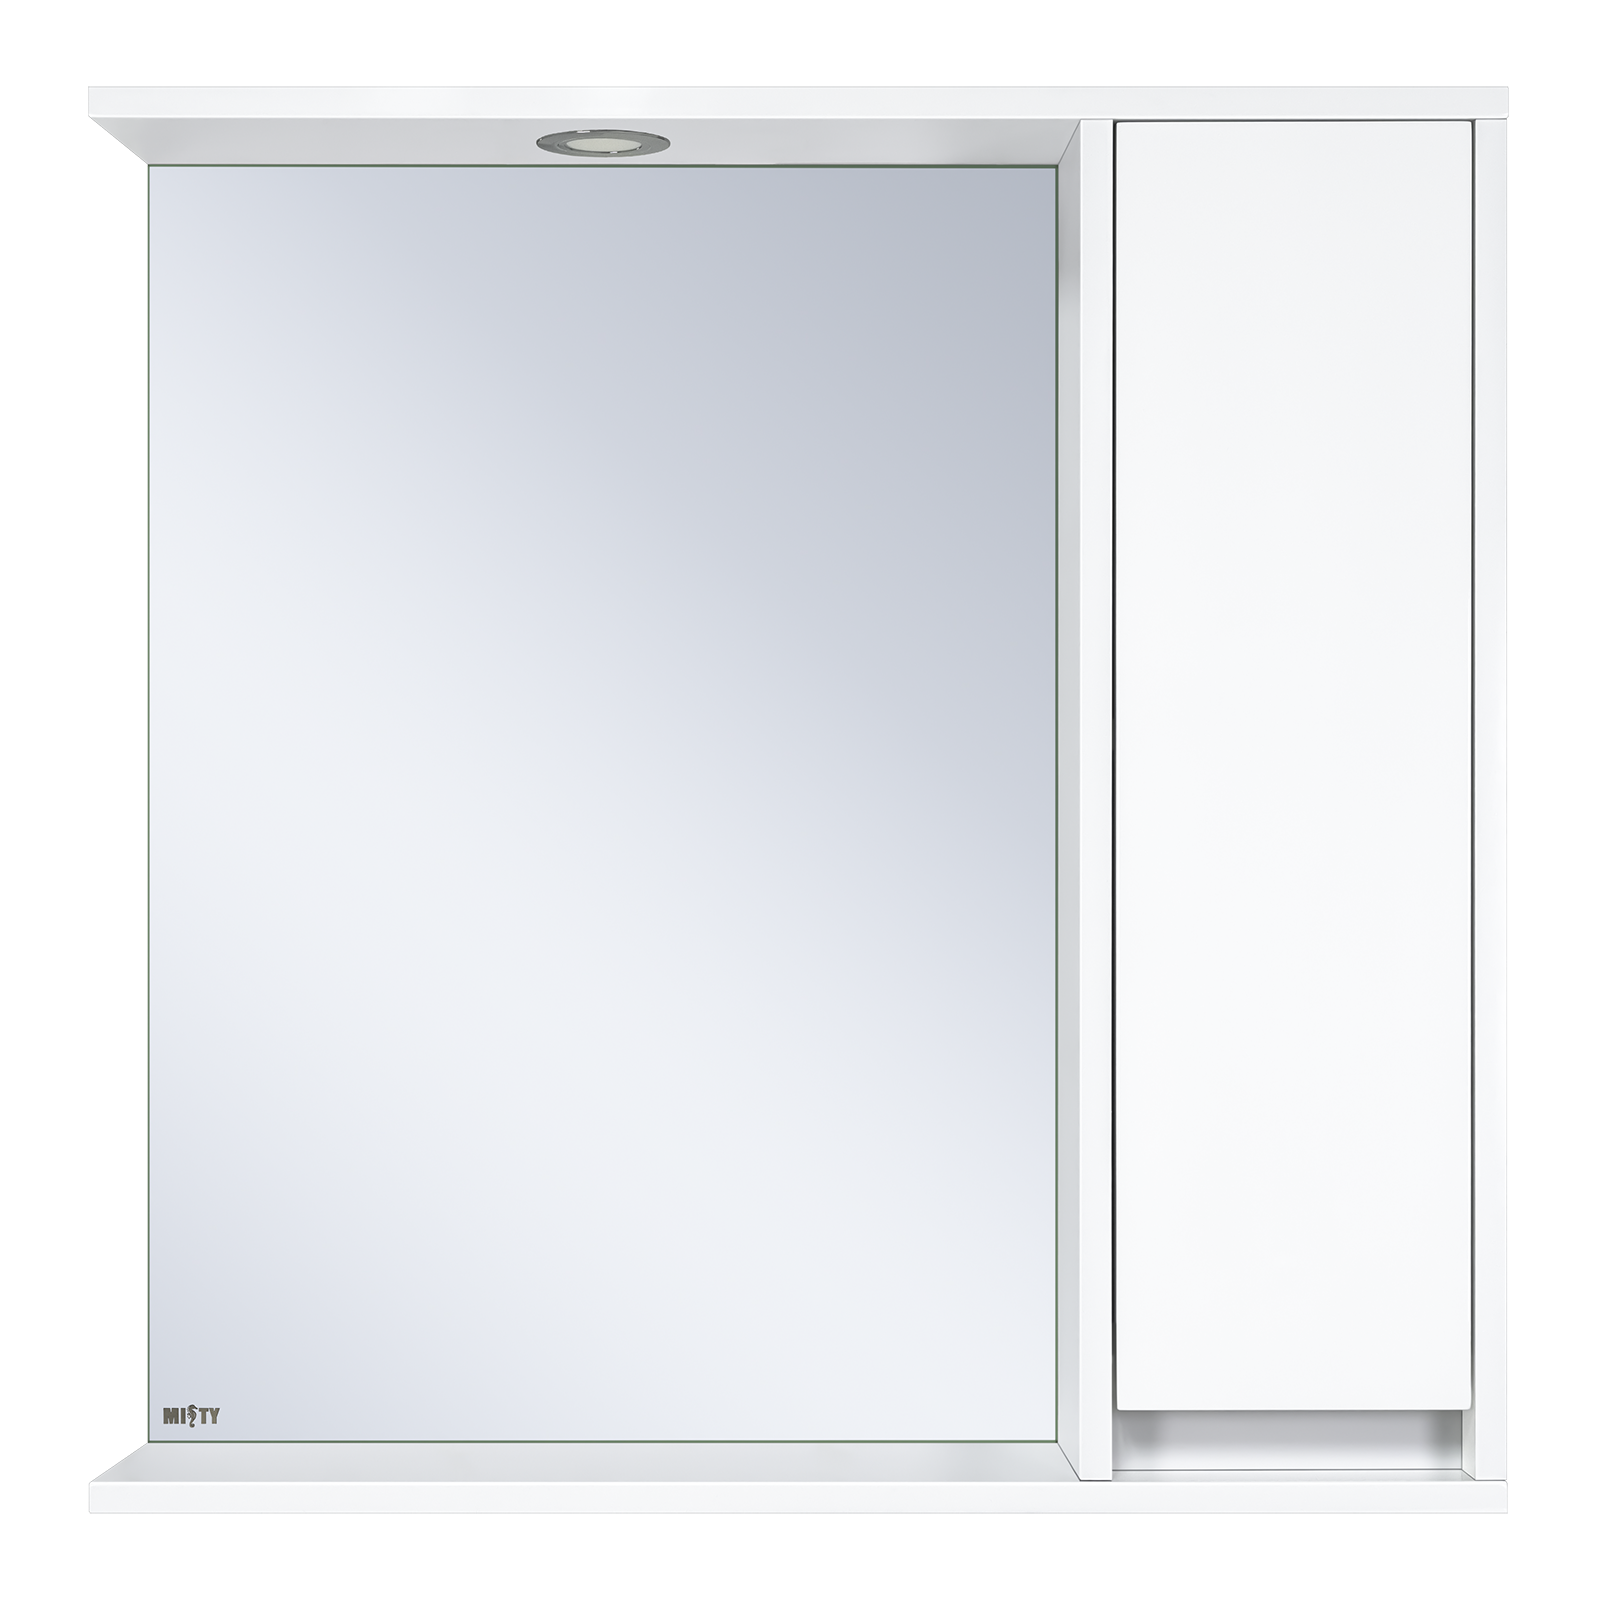 Алиса - 75 Зеркало белое с 1 шкафчиком правое Э-Али04075-01П - фото 1